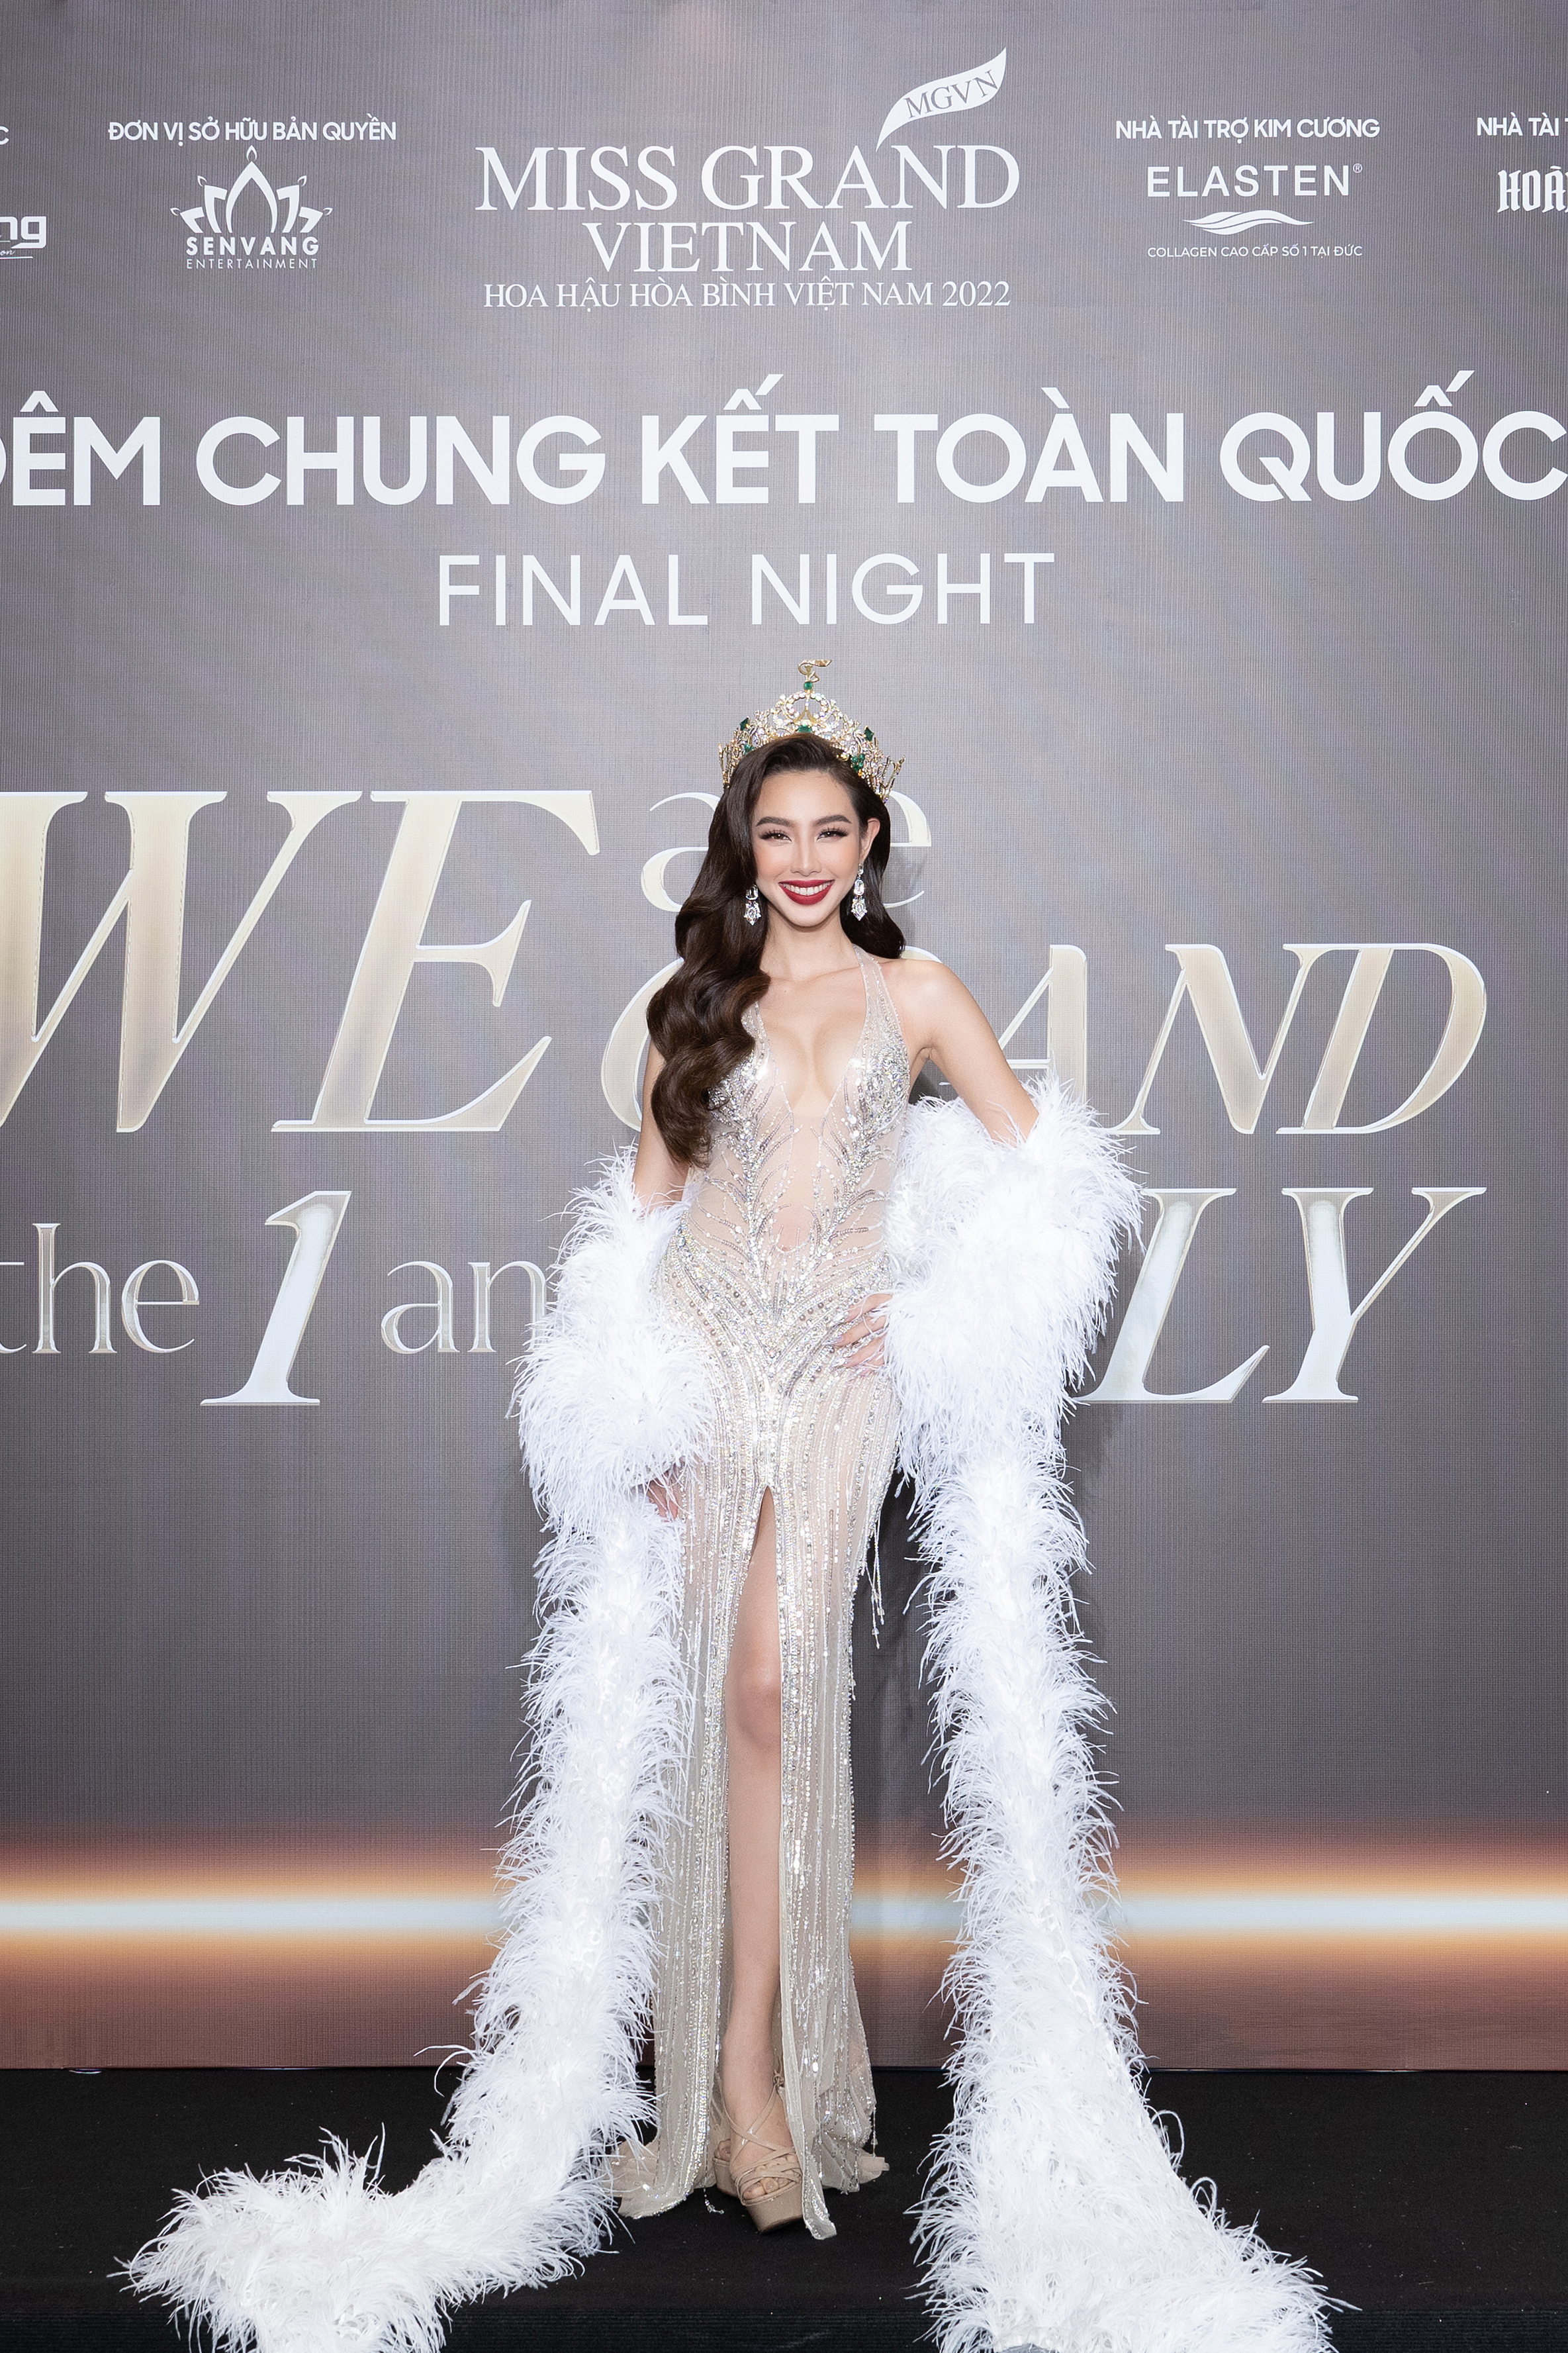 Thùy Tiên, Phương Nhi đội vương miện, rạng rỡ trên thảm đỏ chung kết Miss Grand Vietnam 2022-1